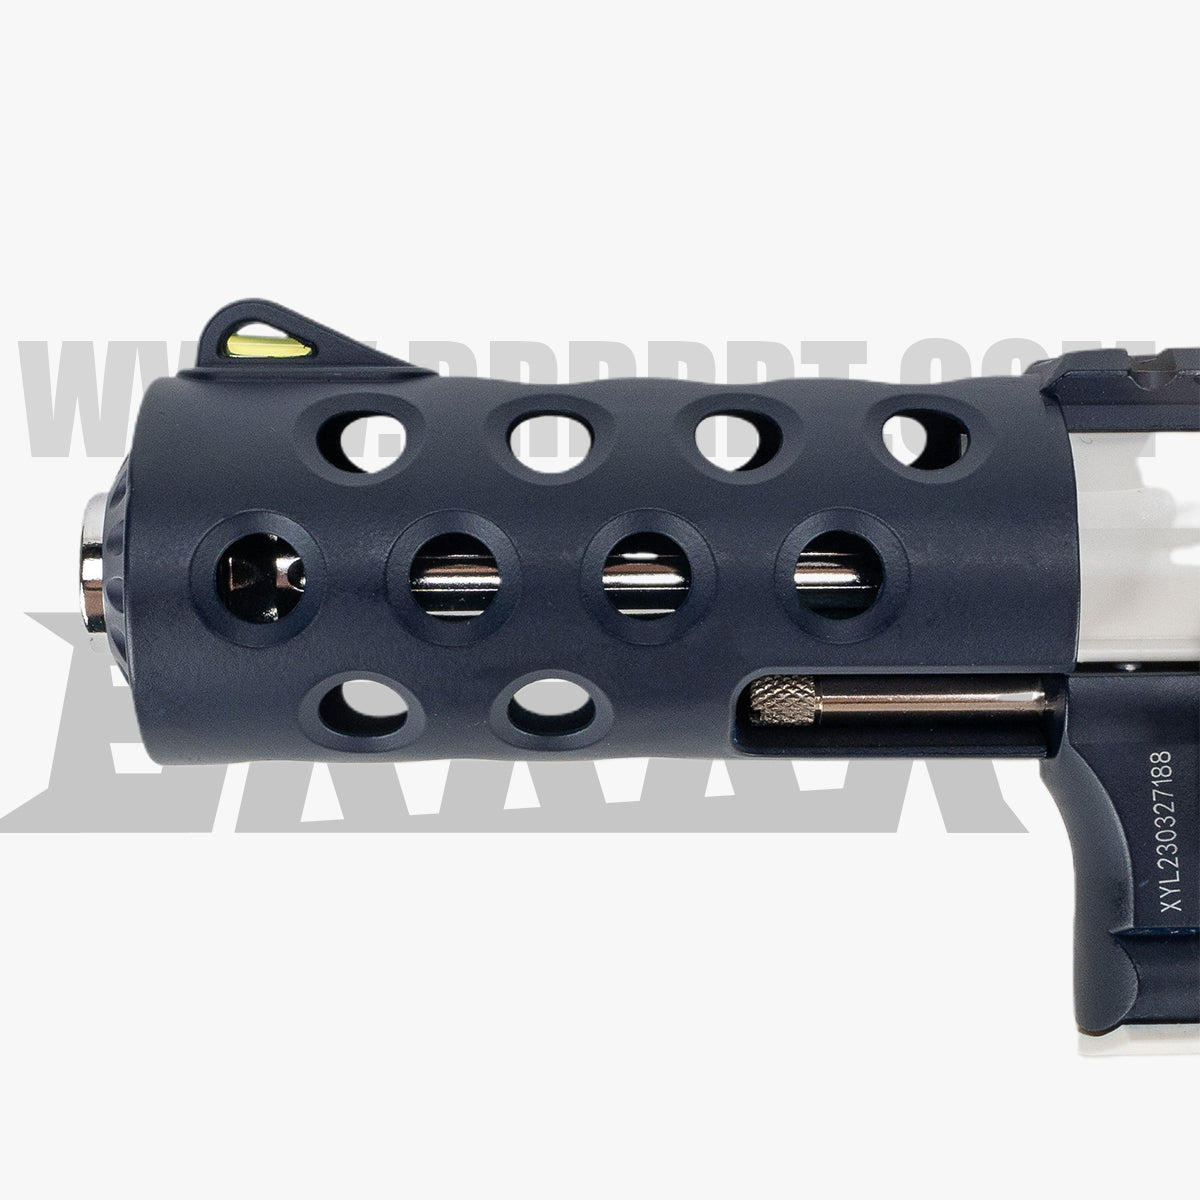 X703-8 Revolver Toy Gun